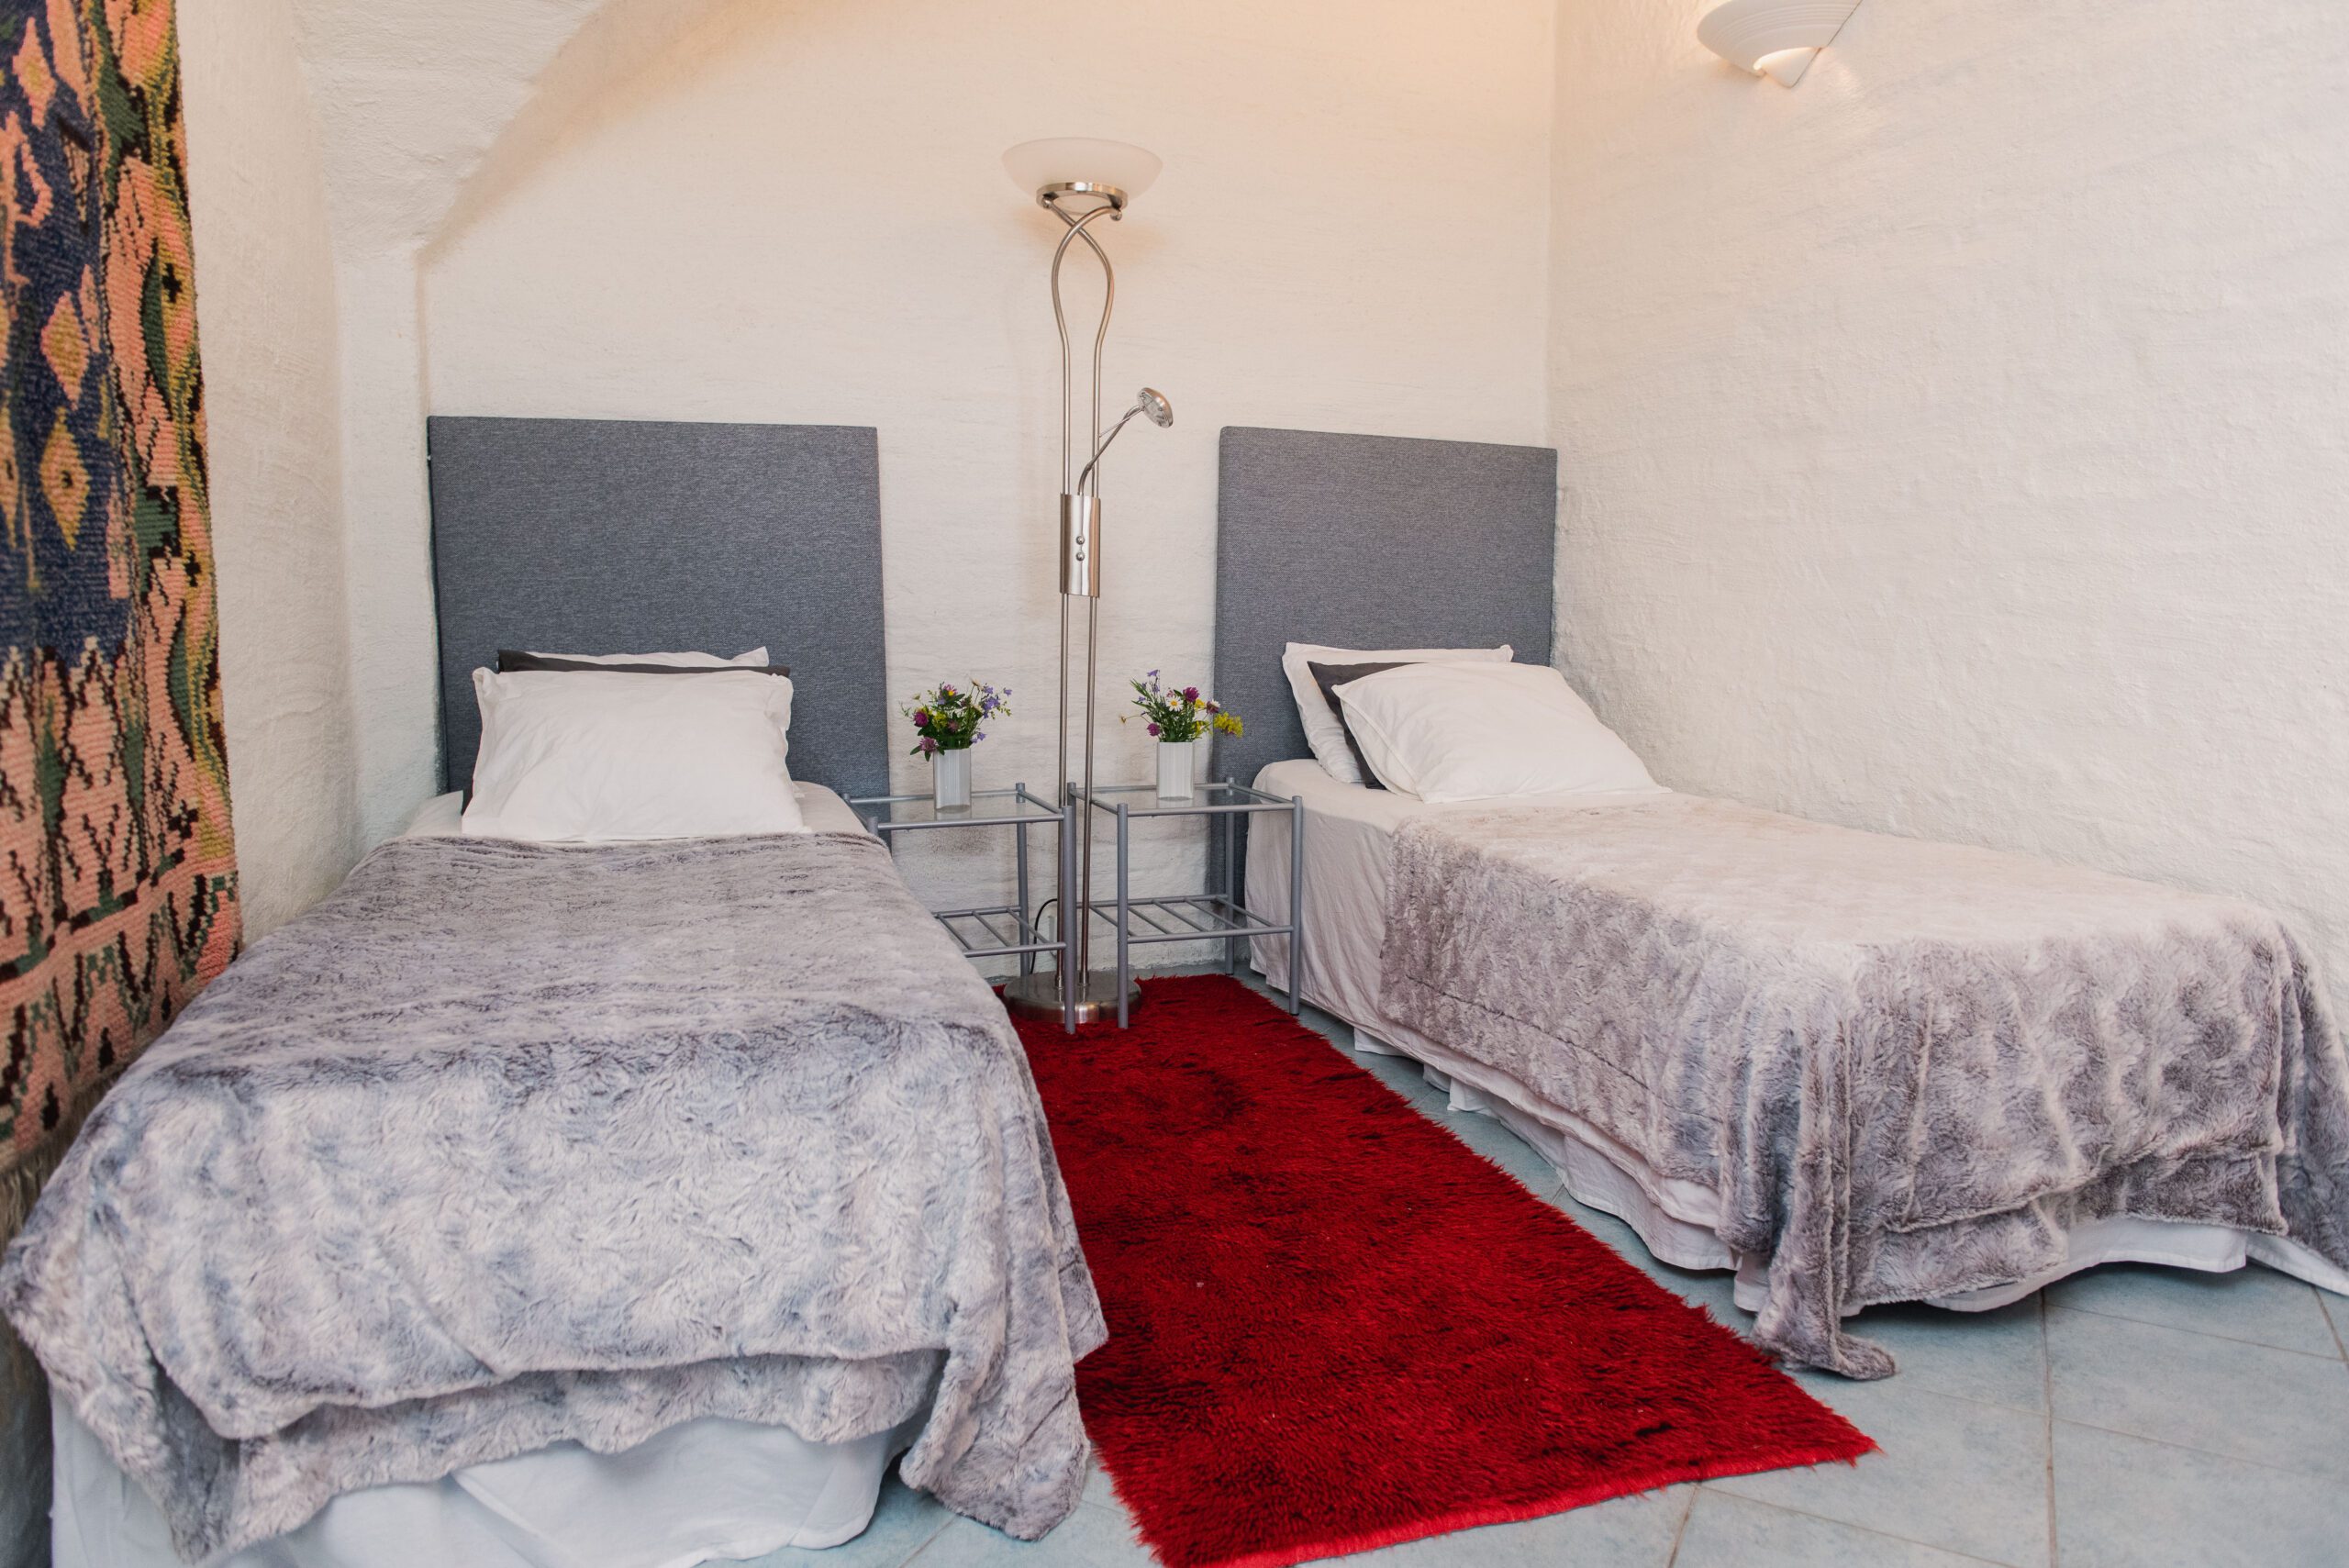 Prestbackan kartanon sisältä kuvattu huone, jossa kaksi sänkyä.